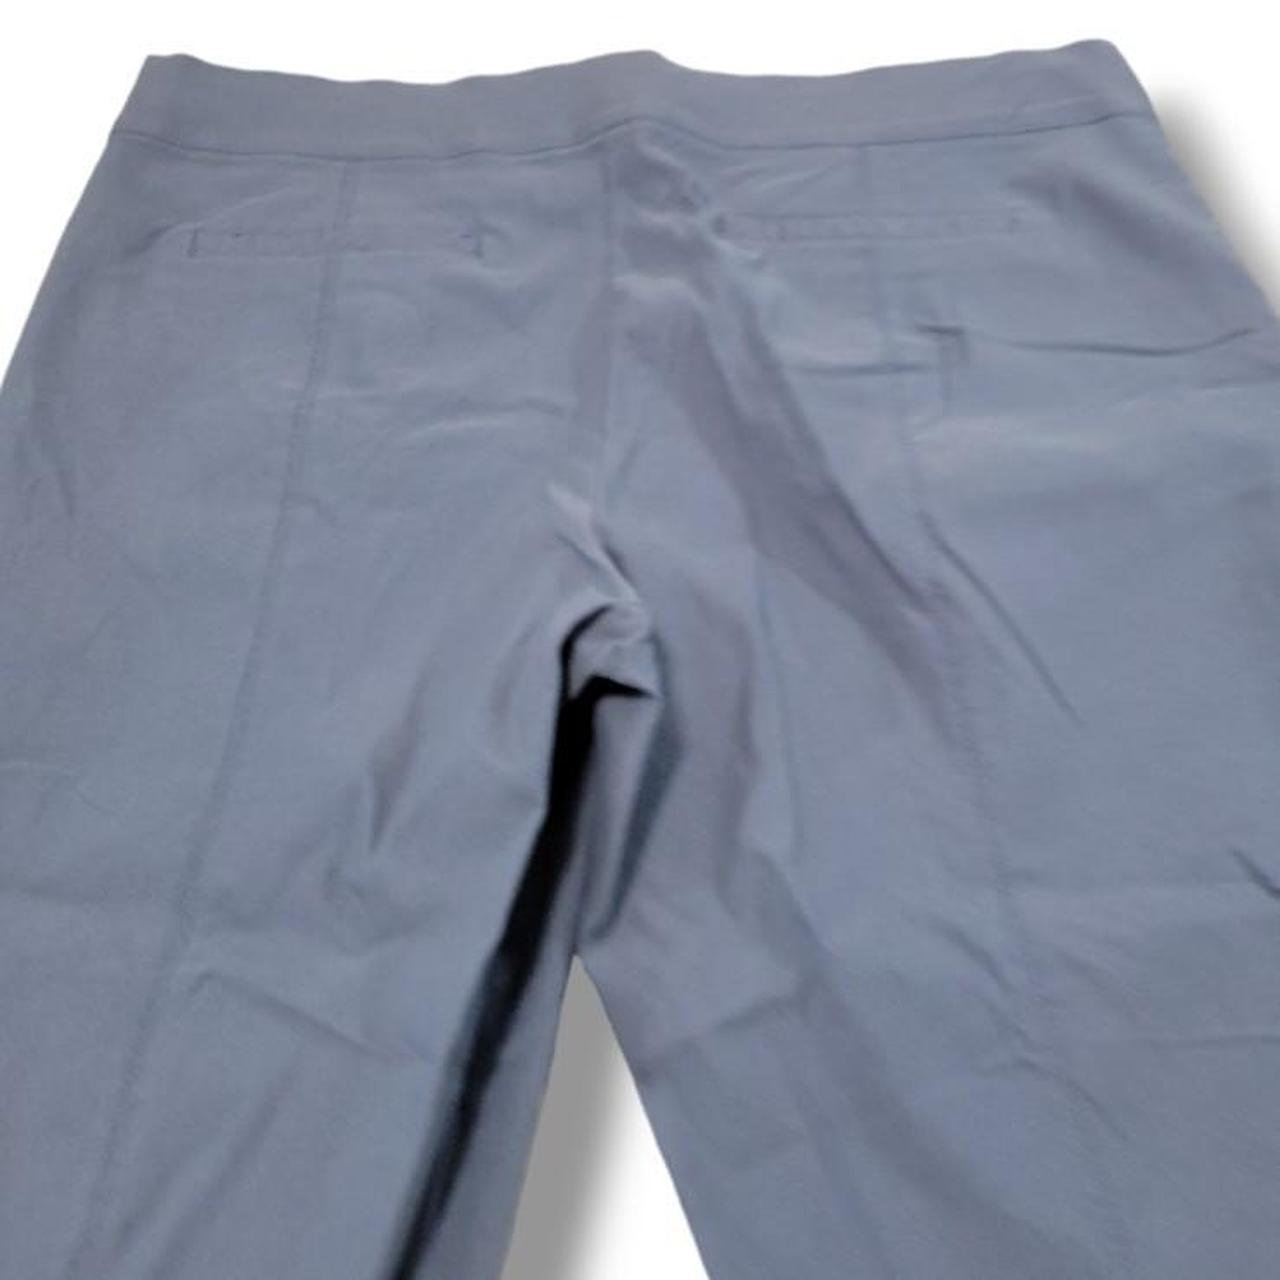 Simply Vera Vera Wang Blue & Gray pants size XL